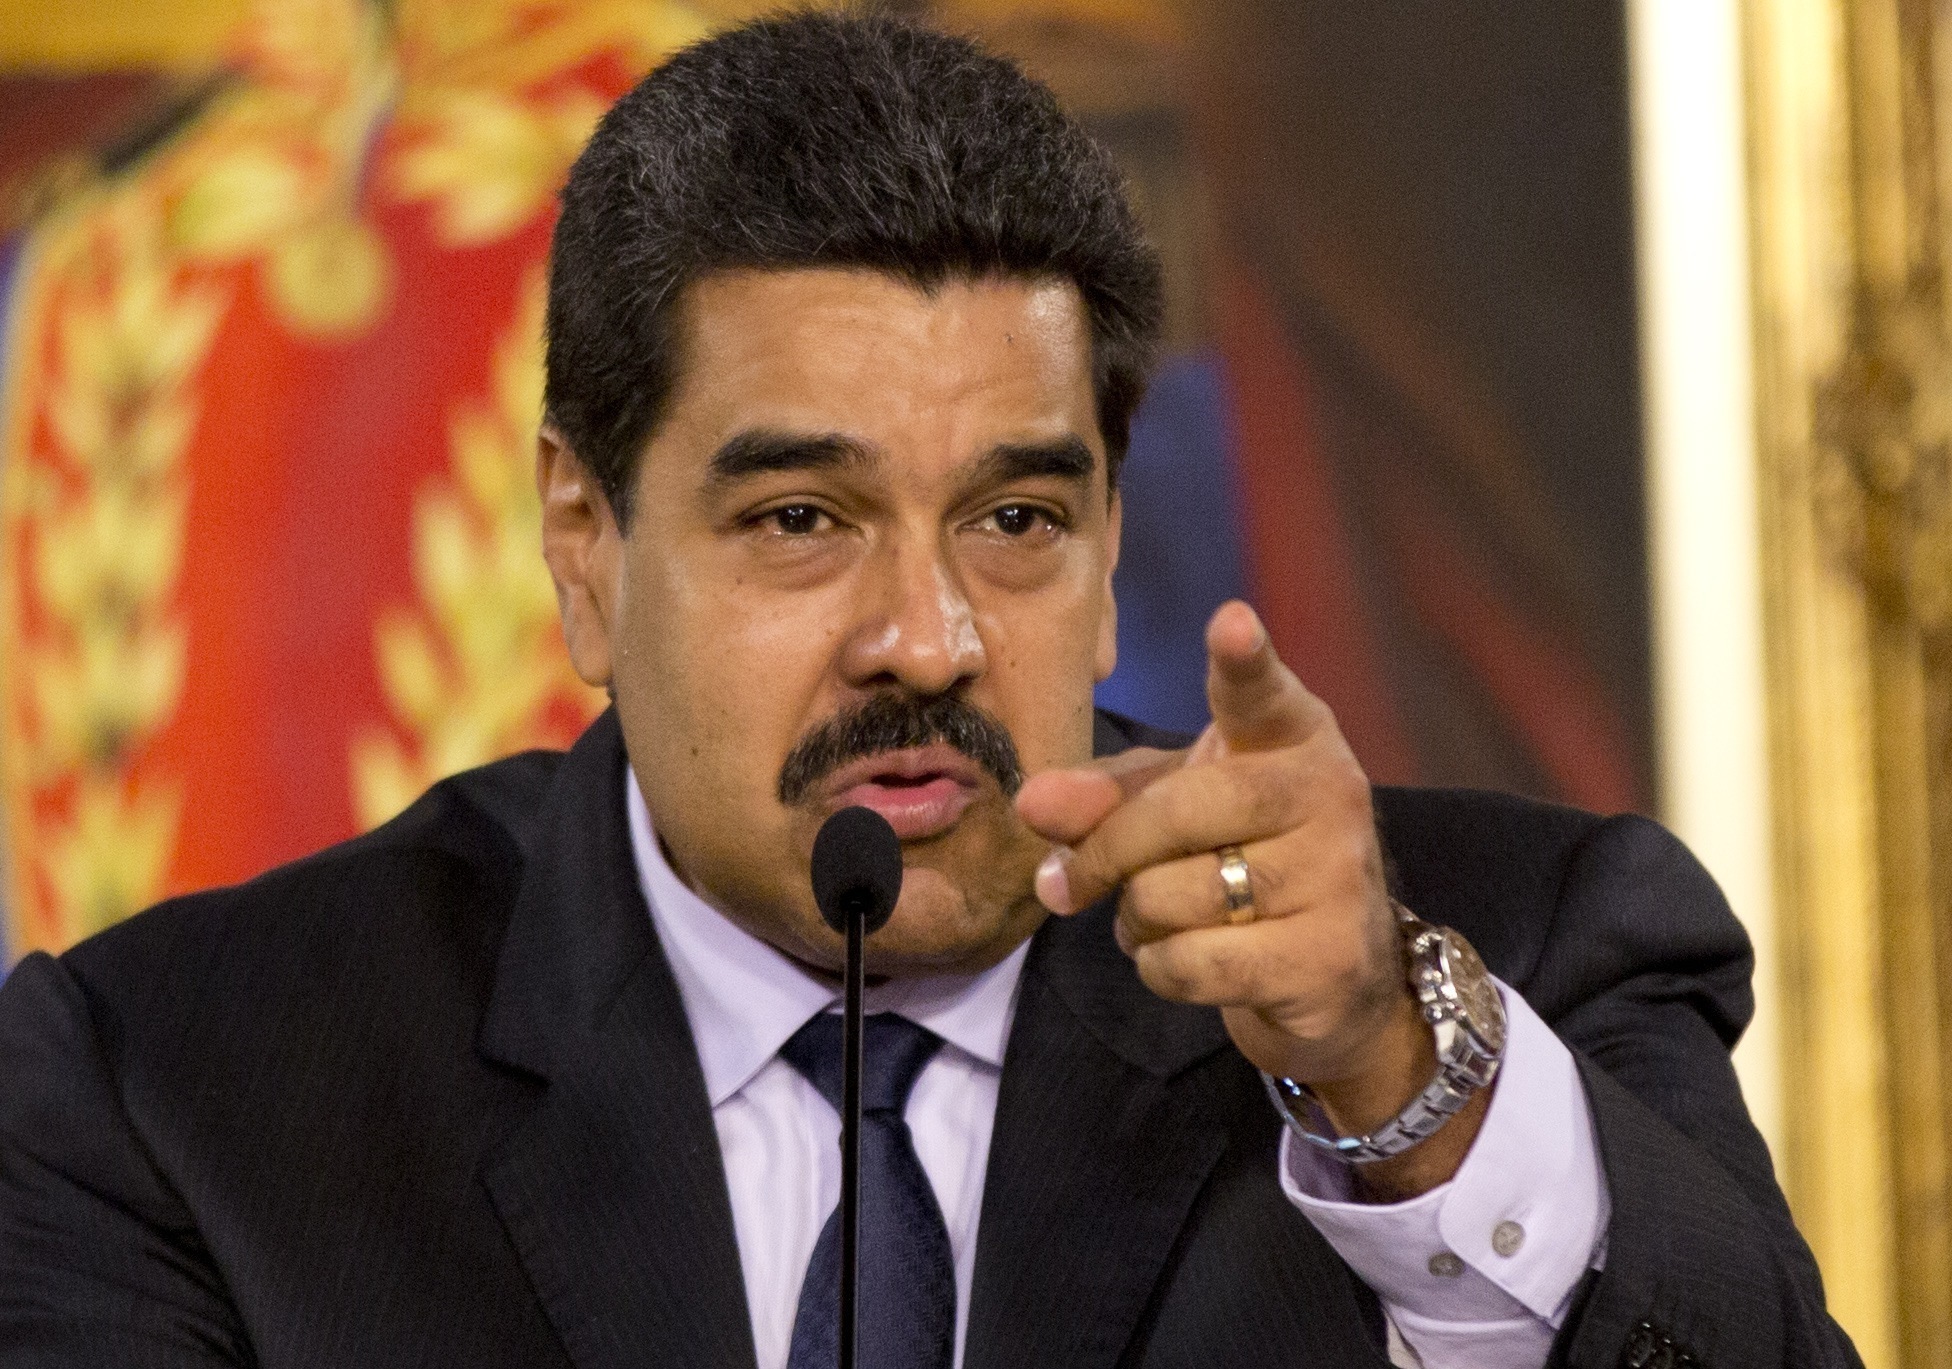 Nicolás Maduro amaga con eliminar inmunidad legislativa